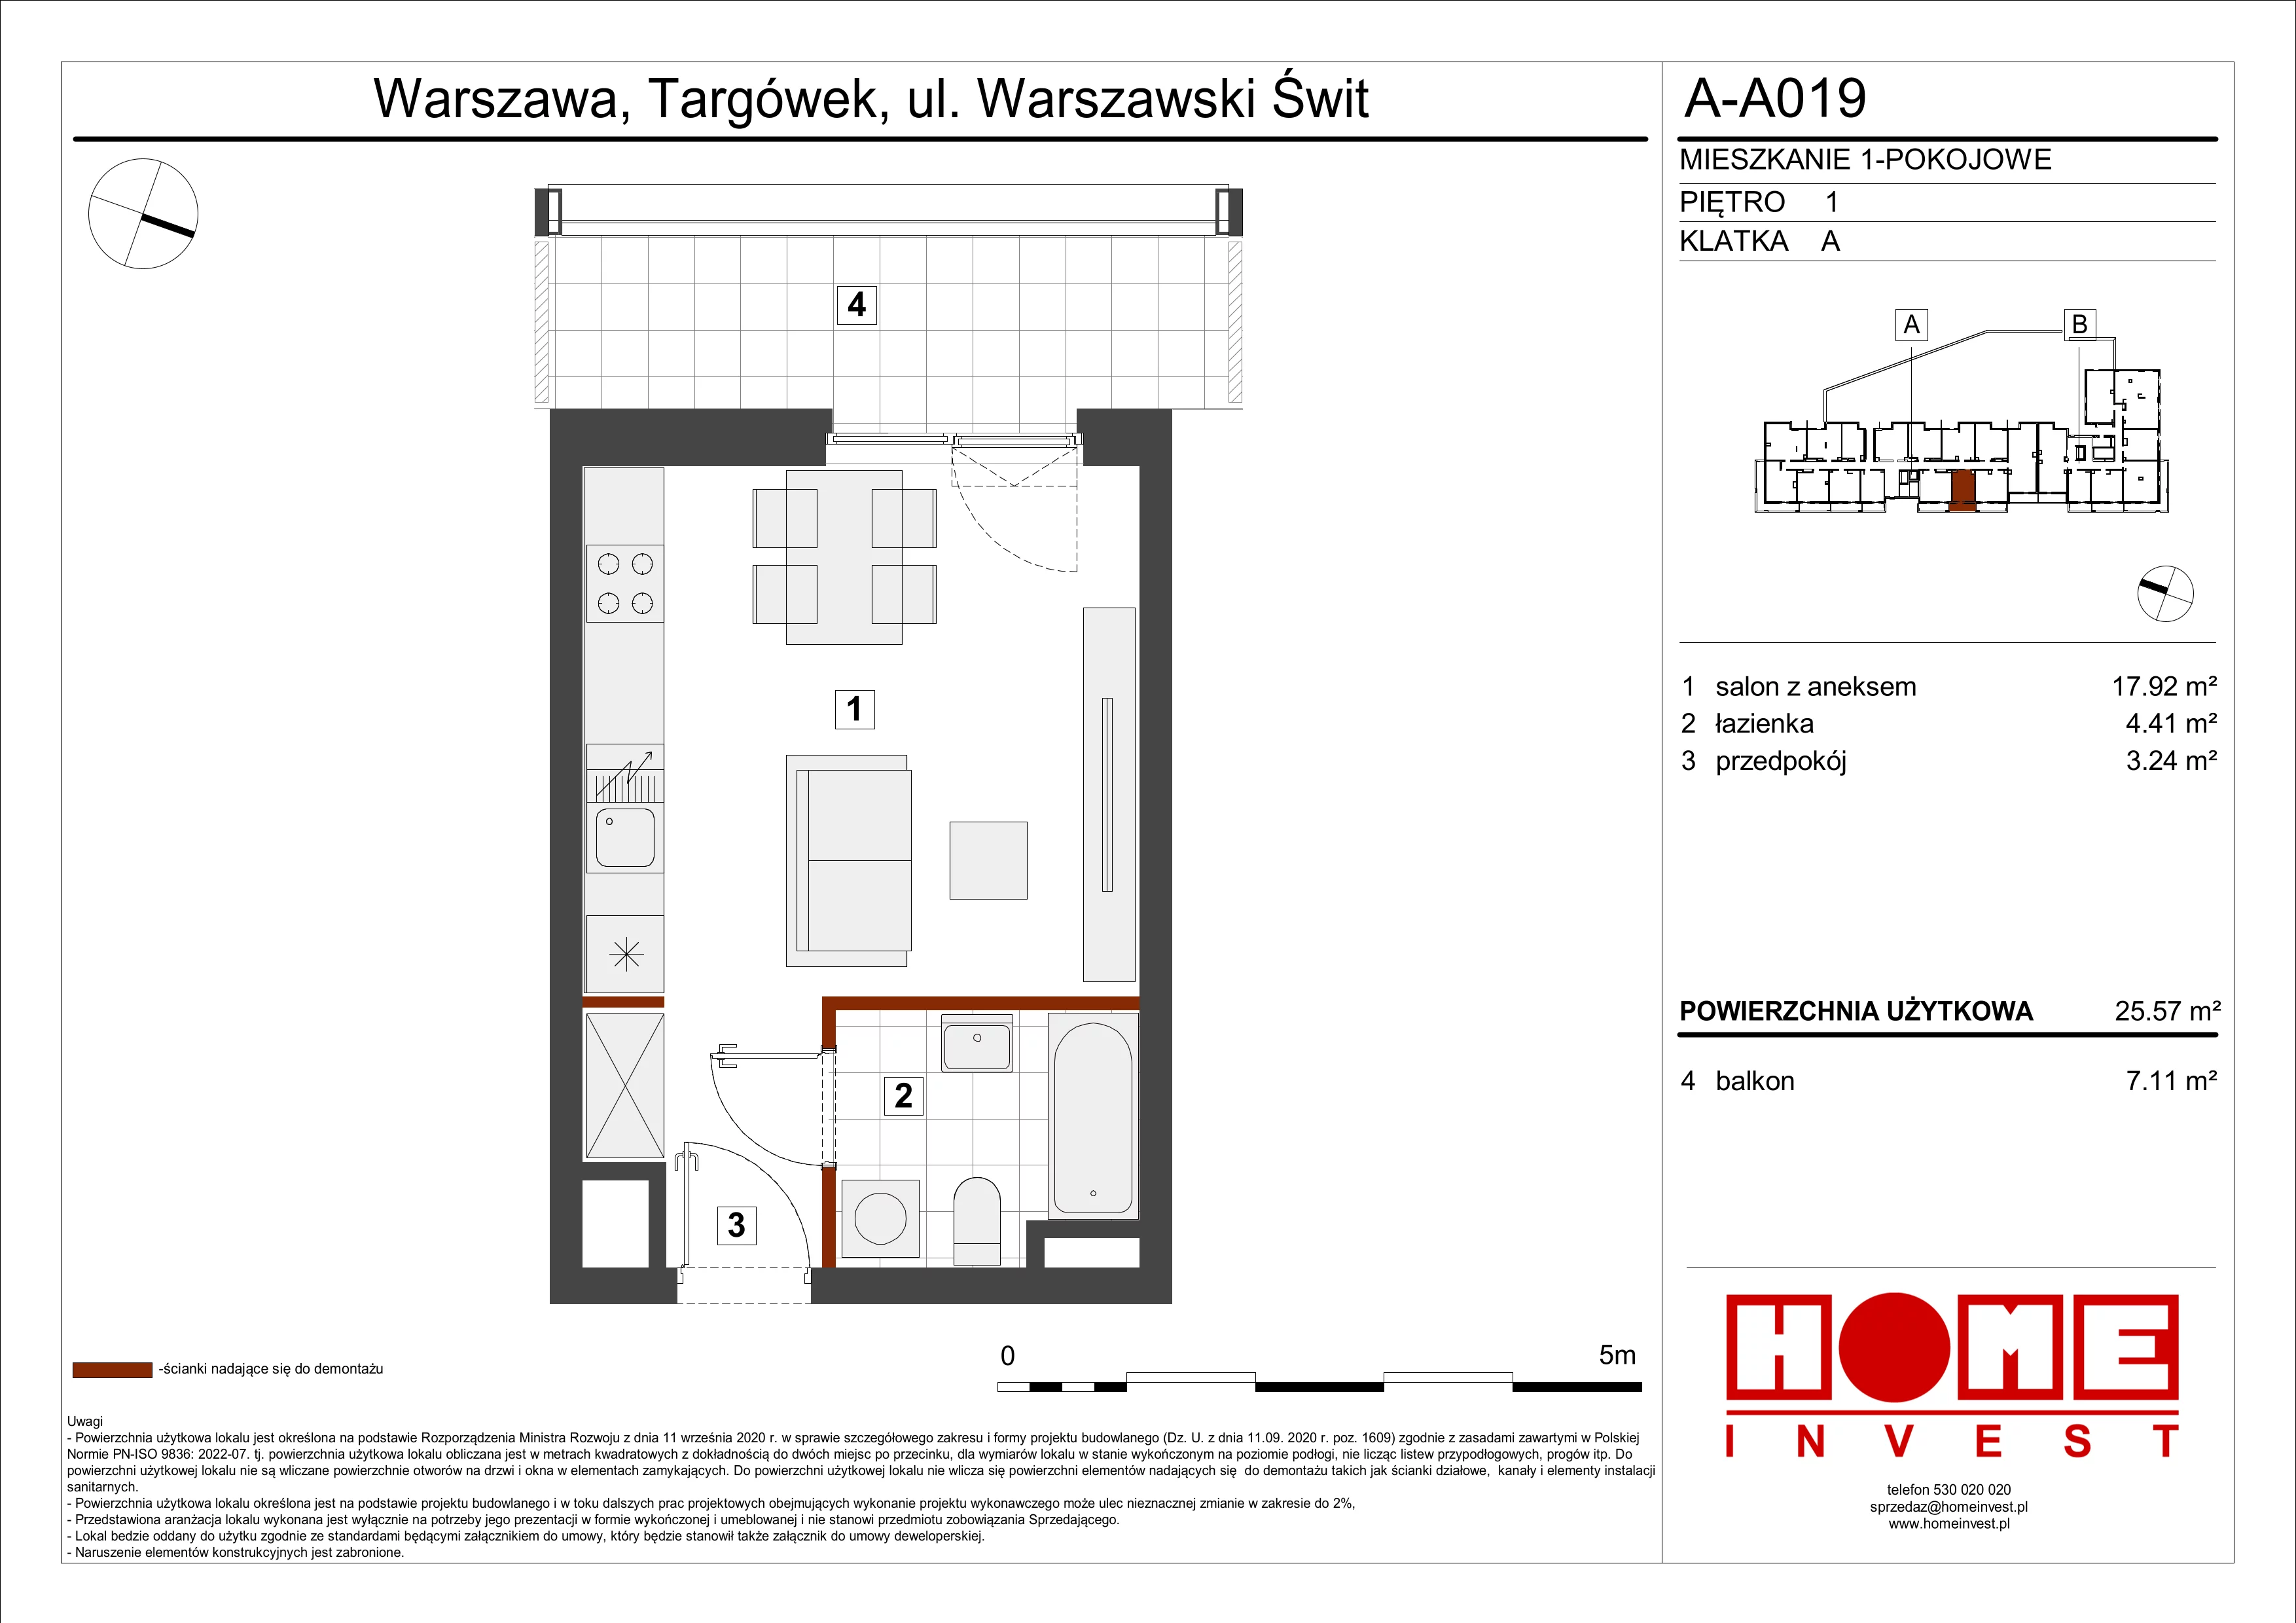 Mieszkanie 25,57 m², piętro 1, oferta nr A-A019, Warszawski Świt, Warszawa, Targówek, Bródno, ul. Warszawski Świt 5